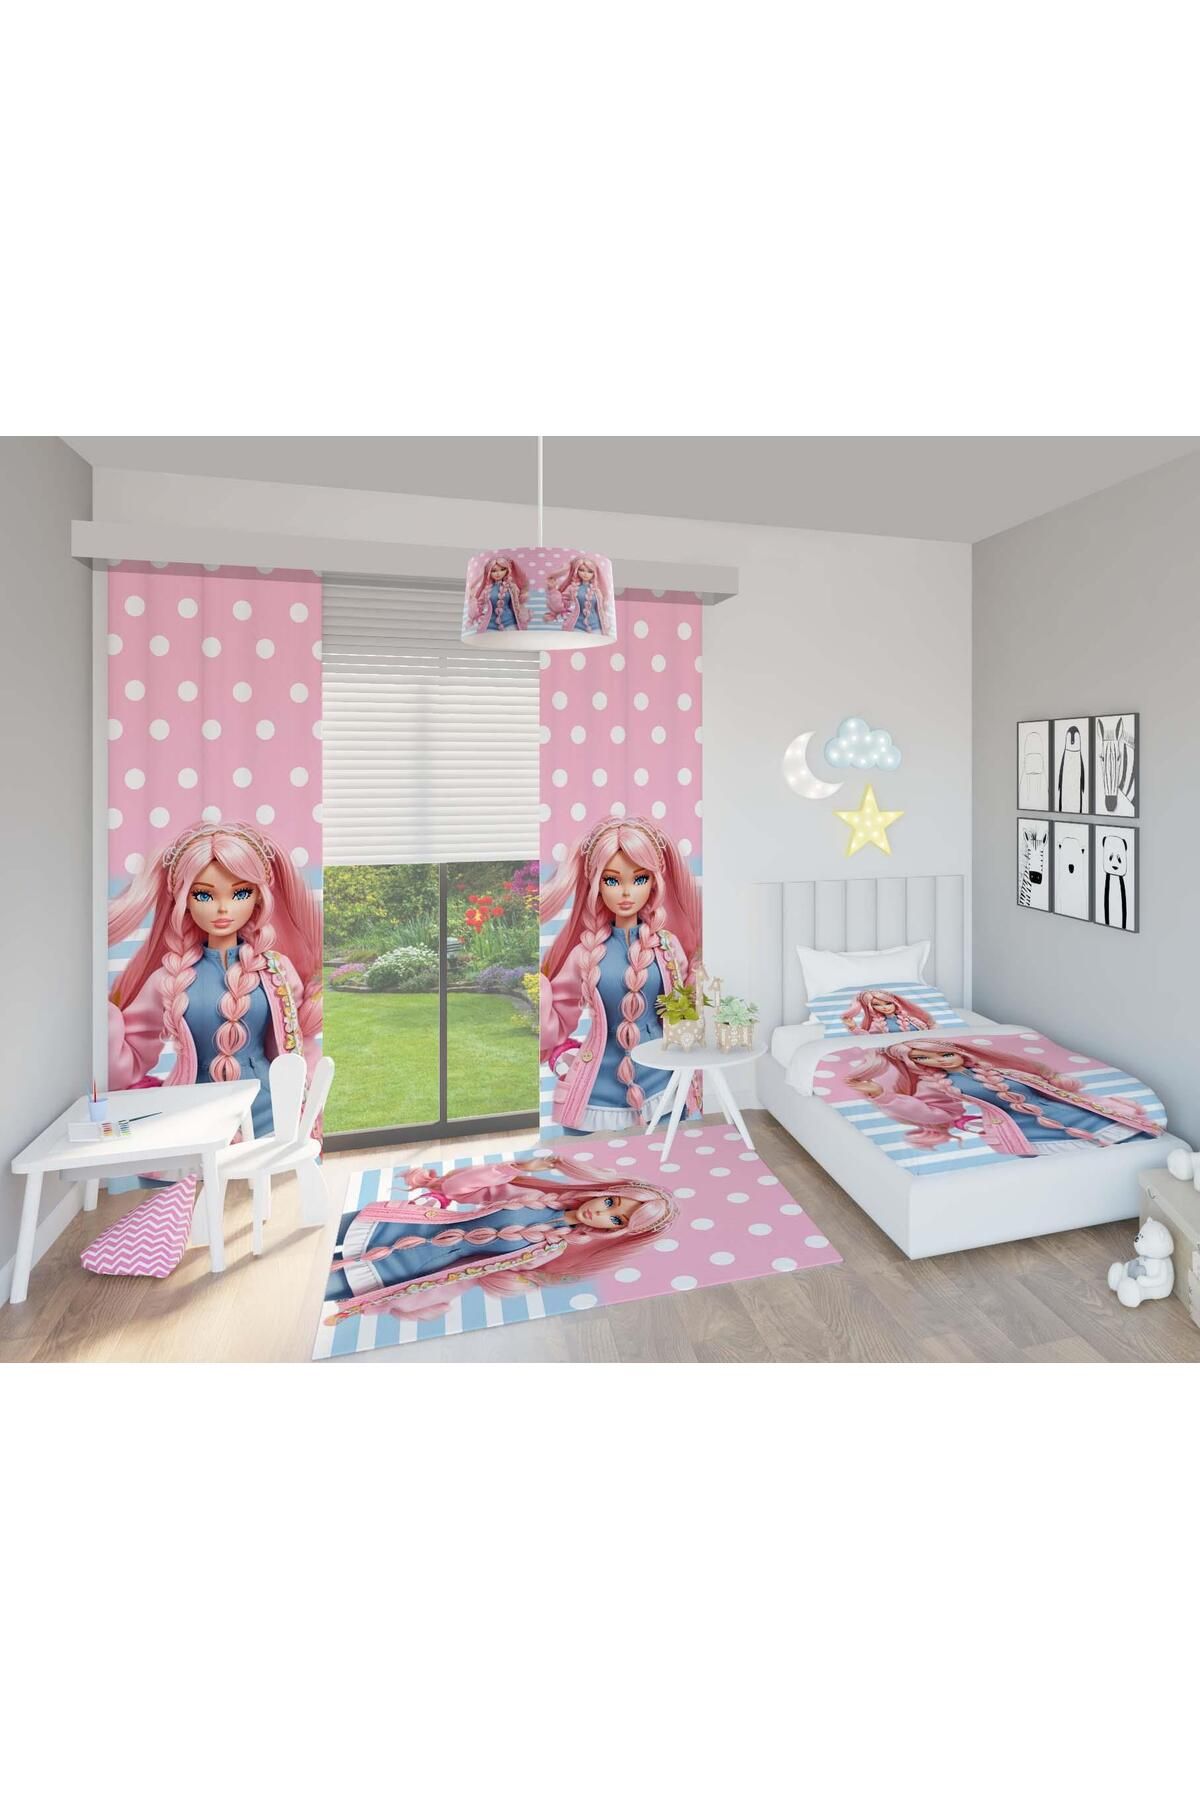 Chiron Baby Desenli Kız Bebek ve Çocuk Odası Seti (Perde, Yatak Örtüsü Seti, Halı, Çamaşır Sepeti, Abajur